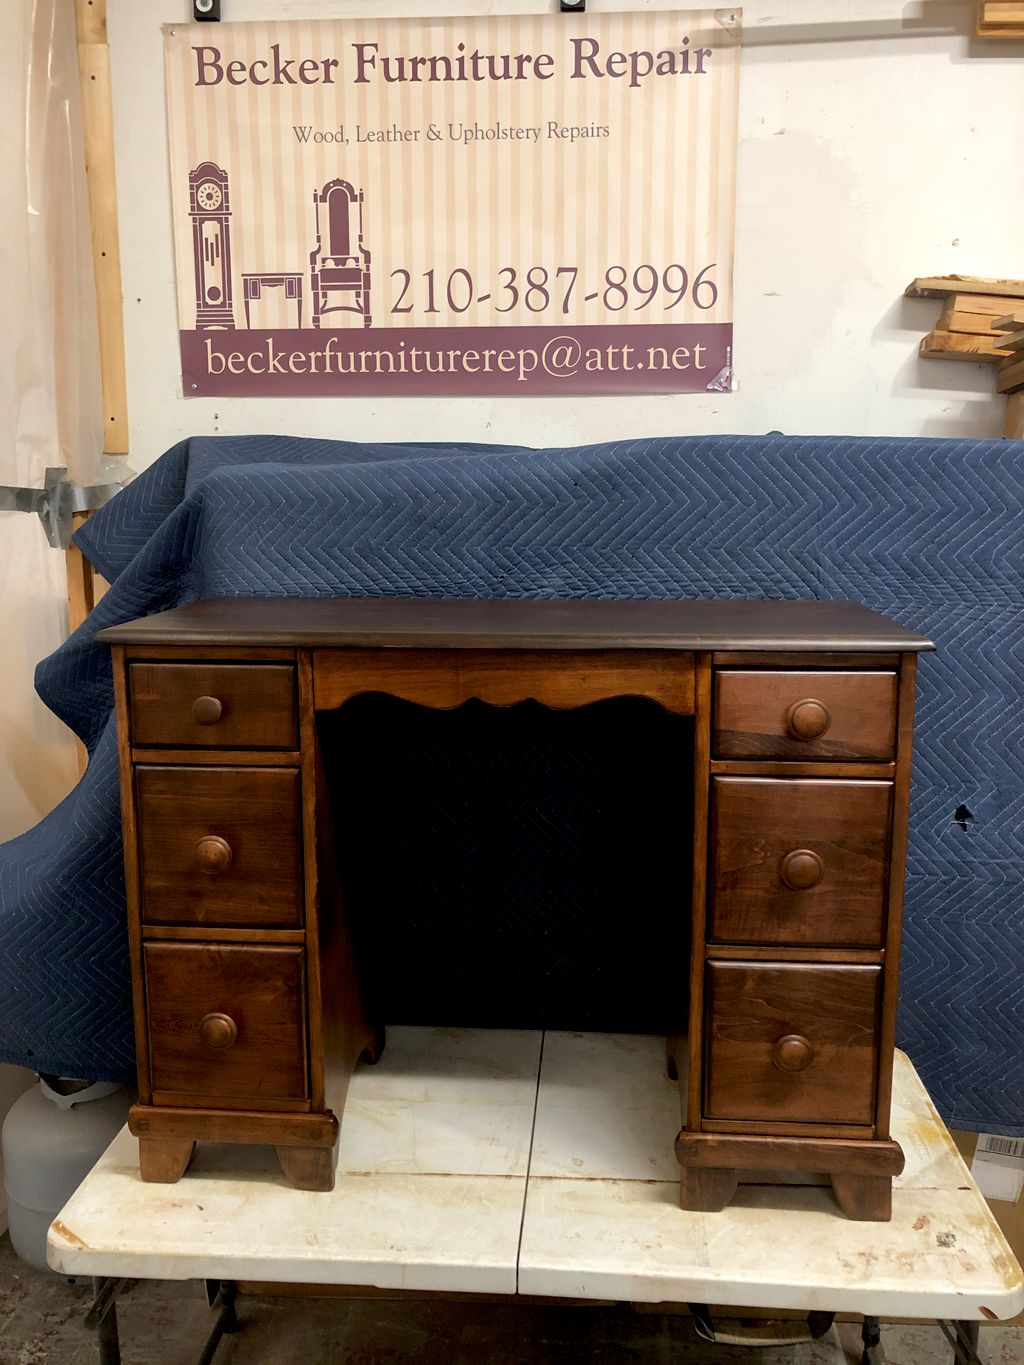 Becker Furniture Repair